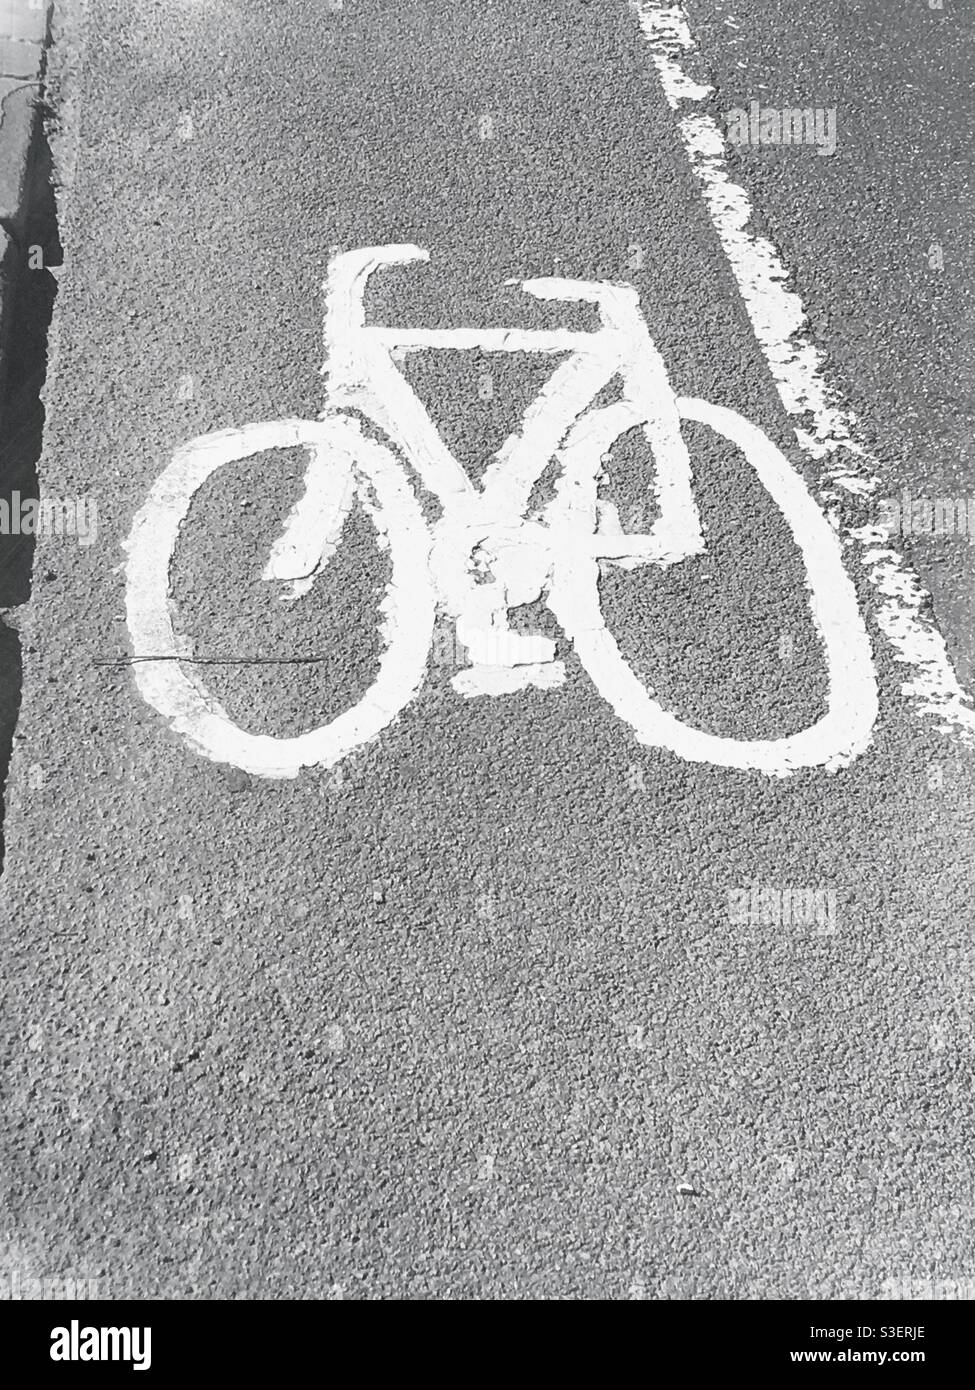 Bristol, Regno Unito - Aprile 2021: Simbolo della corsia in bicicletta in vernice bianca su una superficie stradale asfaltata a Bristol, Inghilterra, Regno Unito Foto Stock